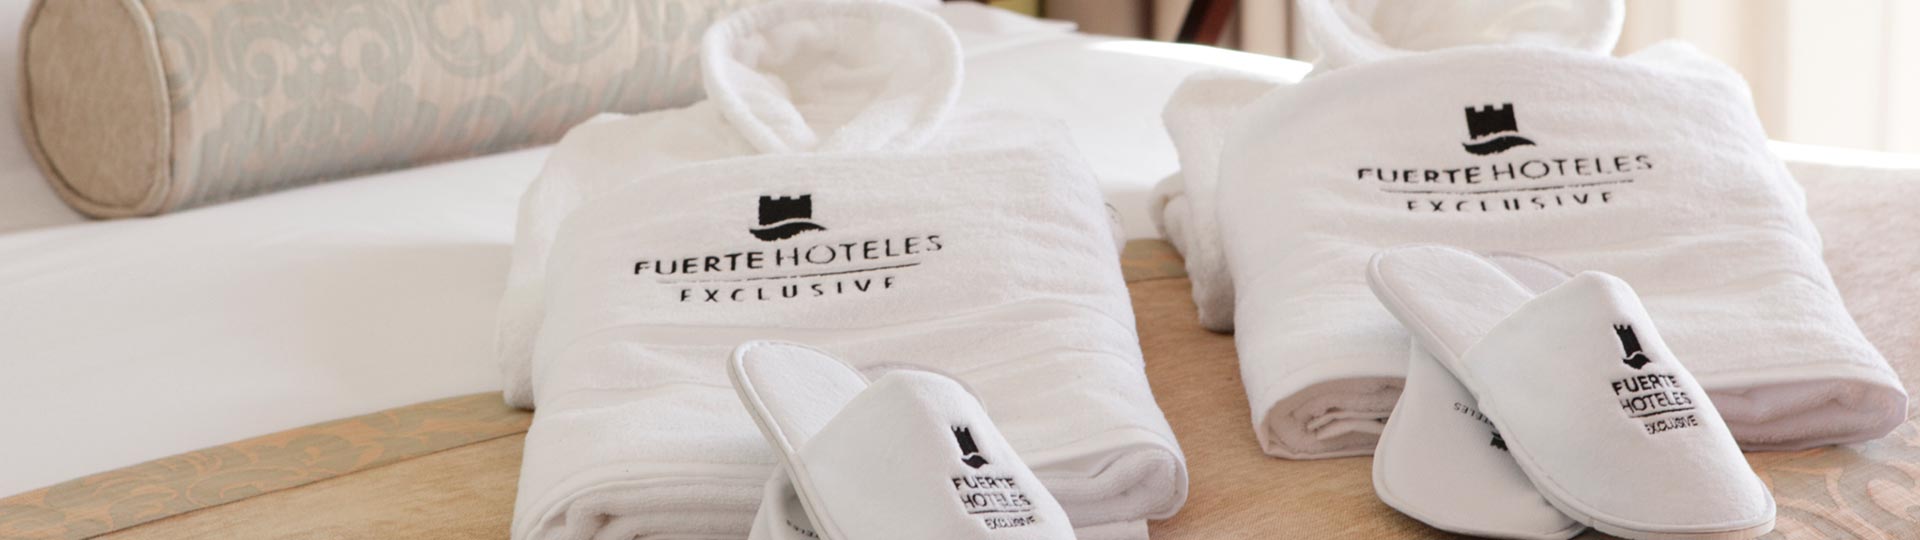 Servicio Exclusive, Hotel Fuerte Grazalema,